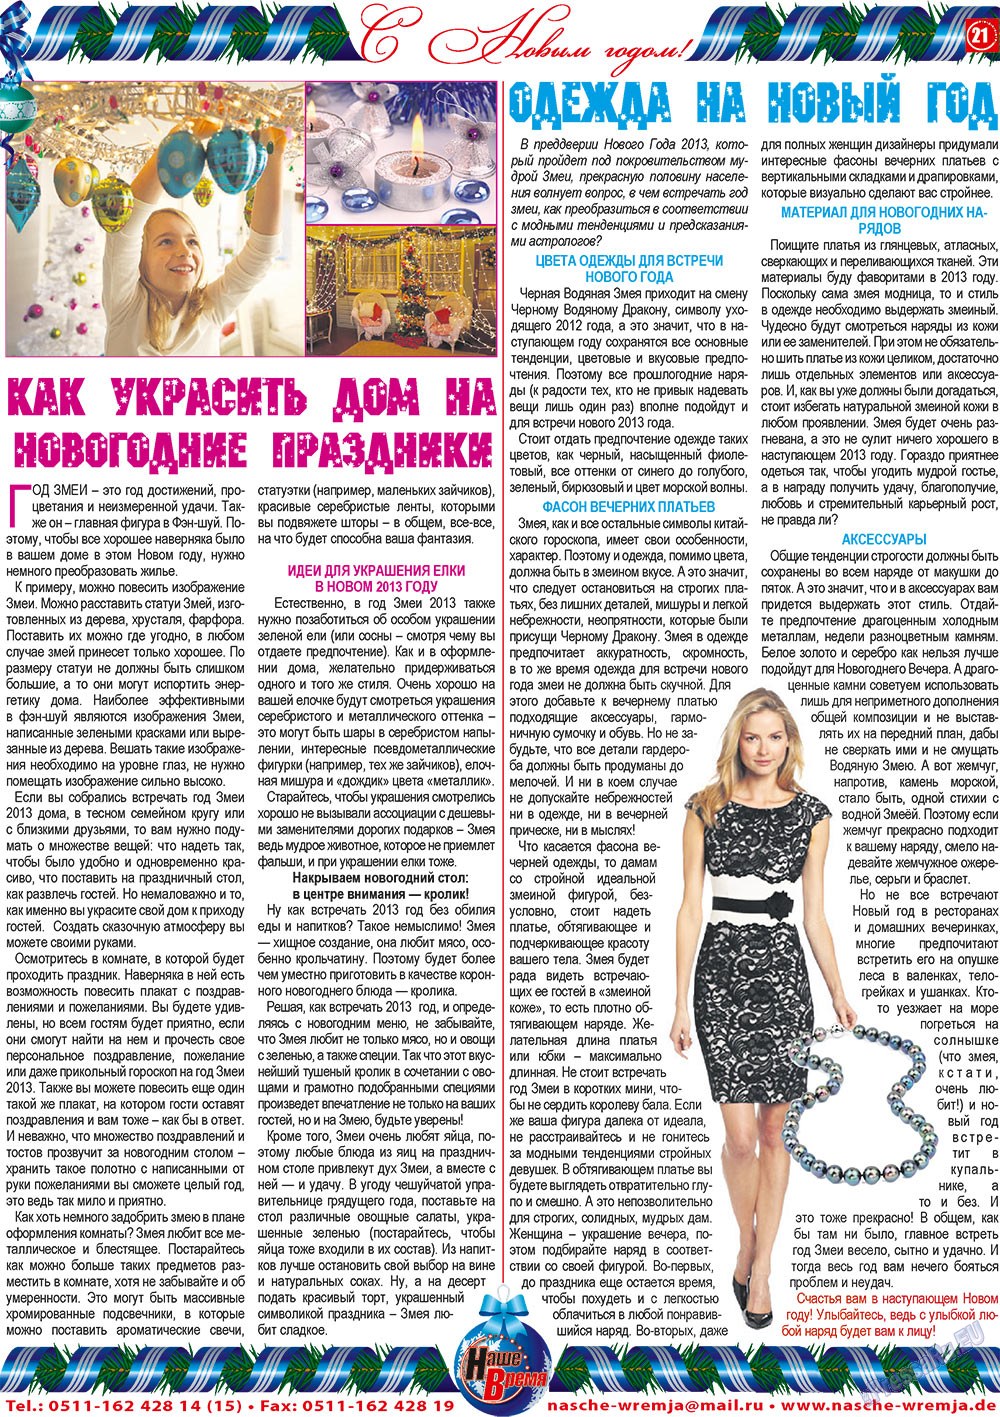 Наше время, газета. 2012 №12 стр.21